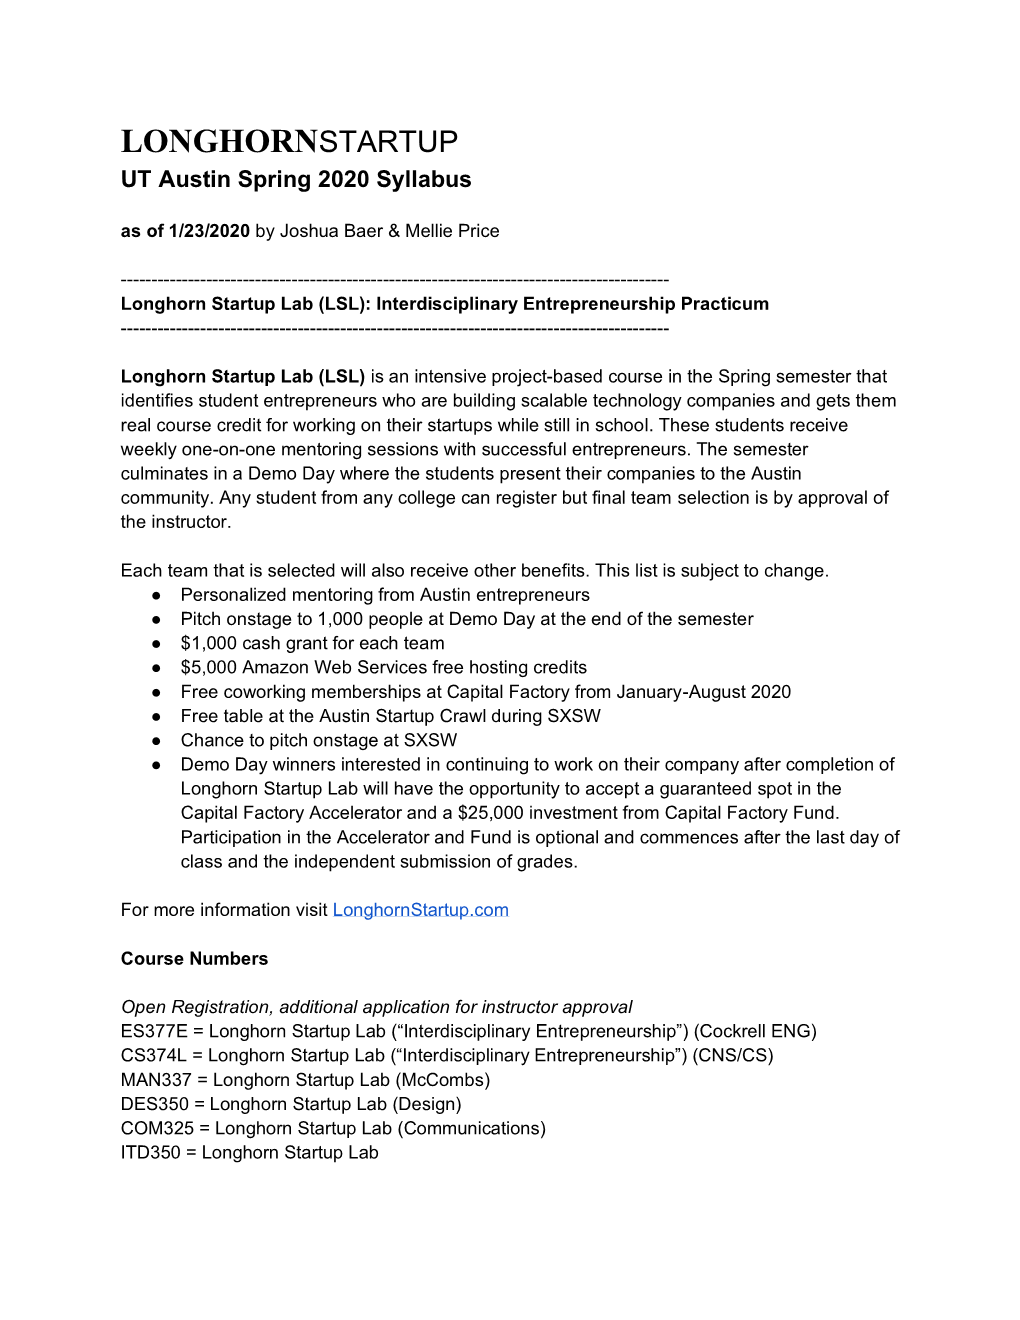 LONGHORNSTARTUP UT Austin Spring 2020 Syllabus As of 1/23/2020 by Joshua Baer & Mellie Price